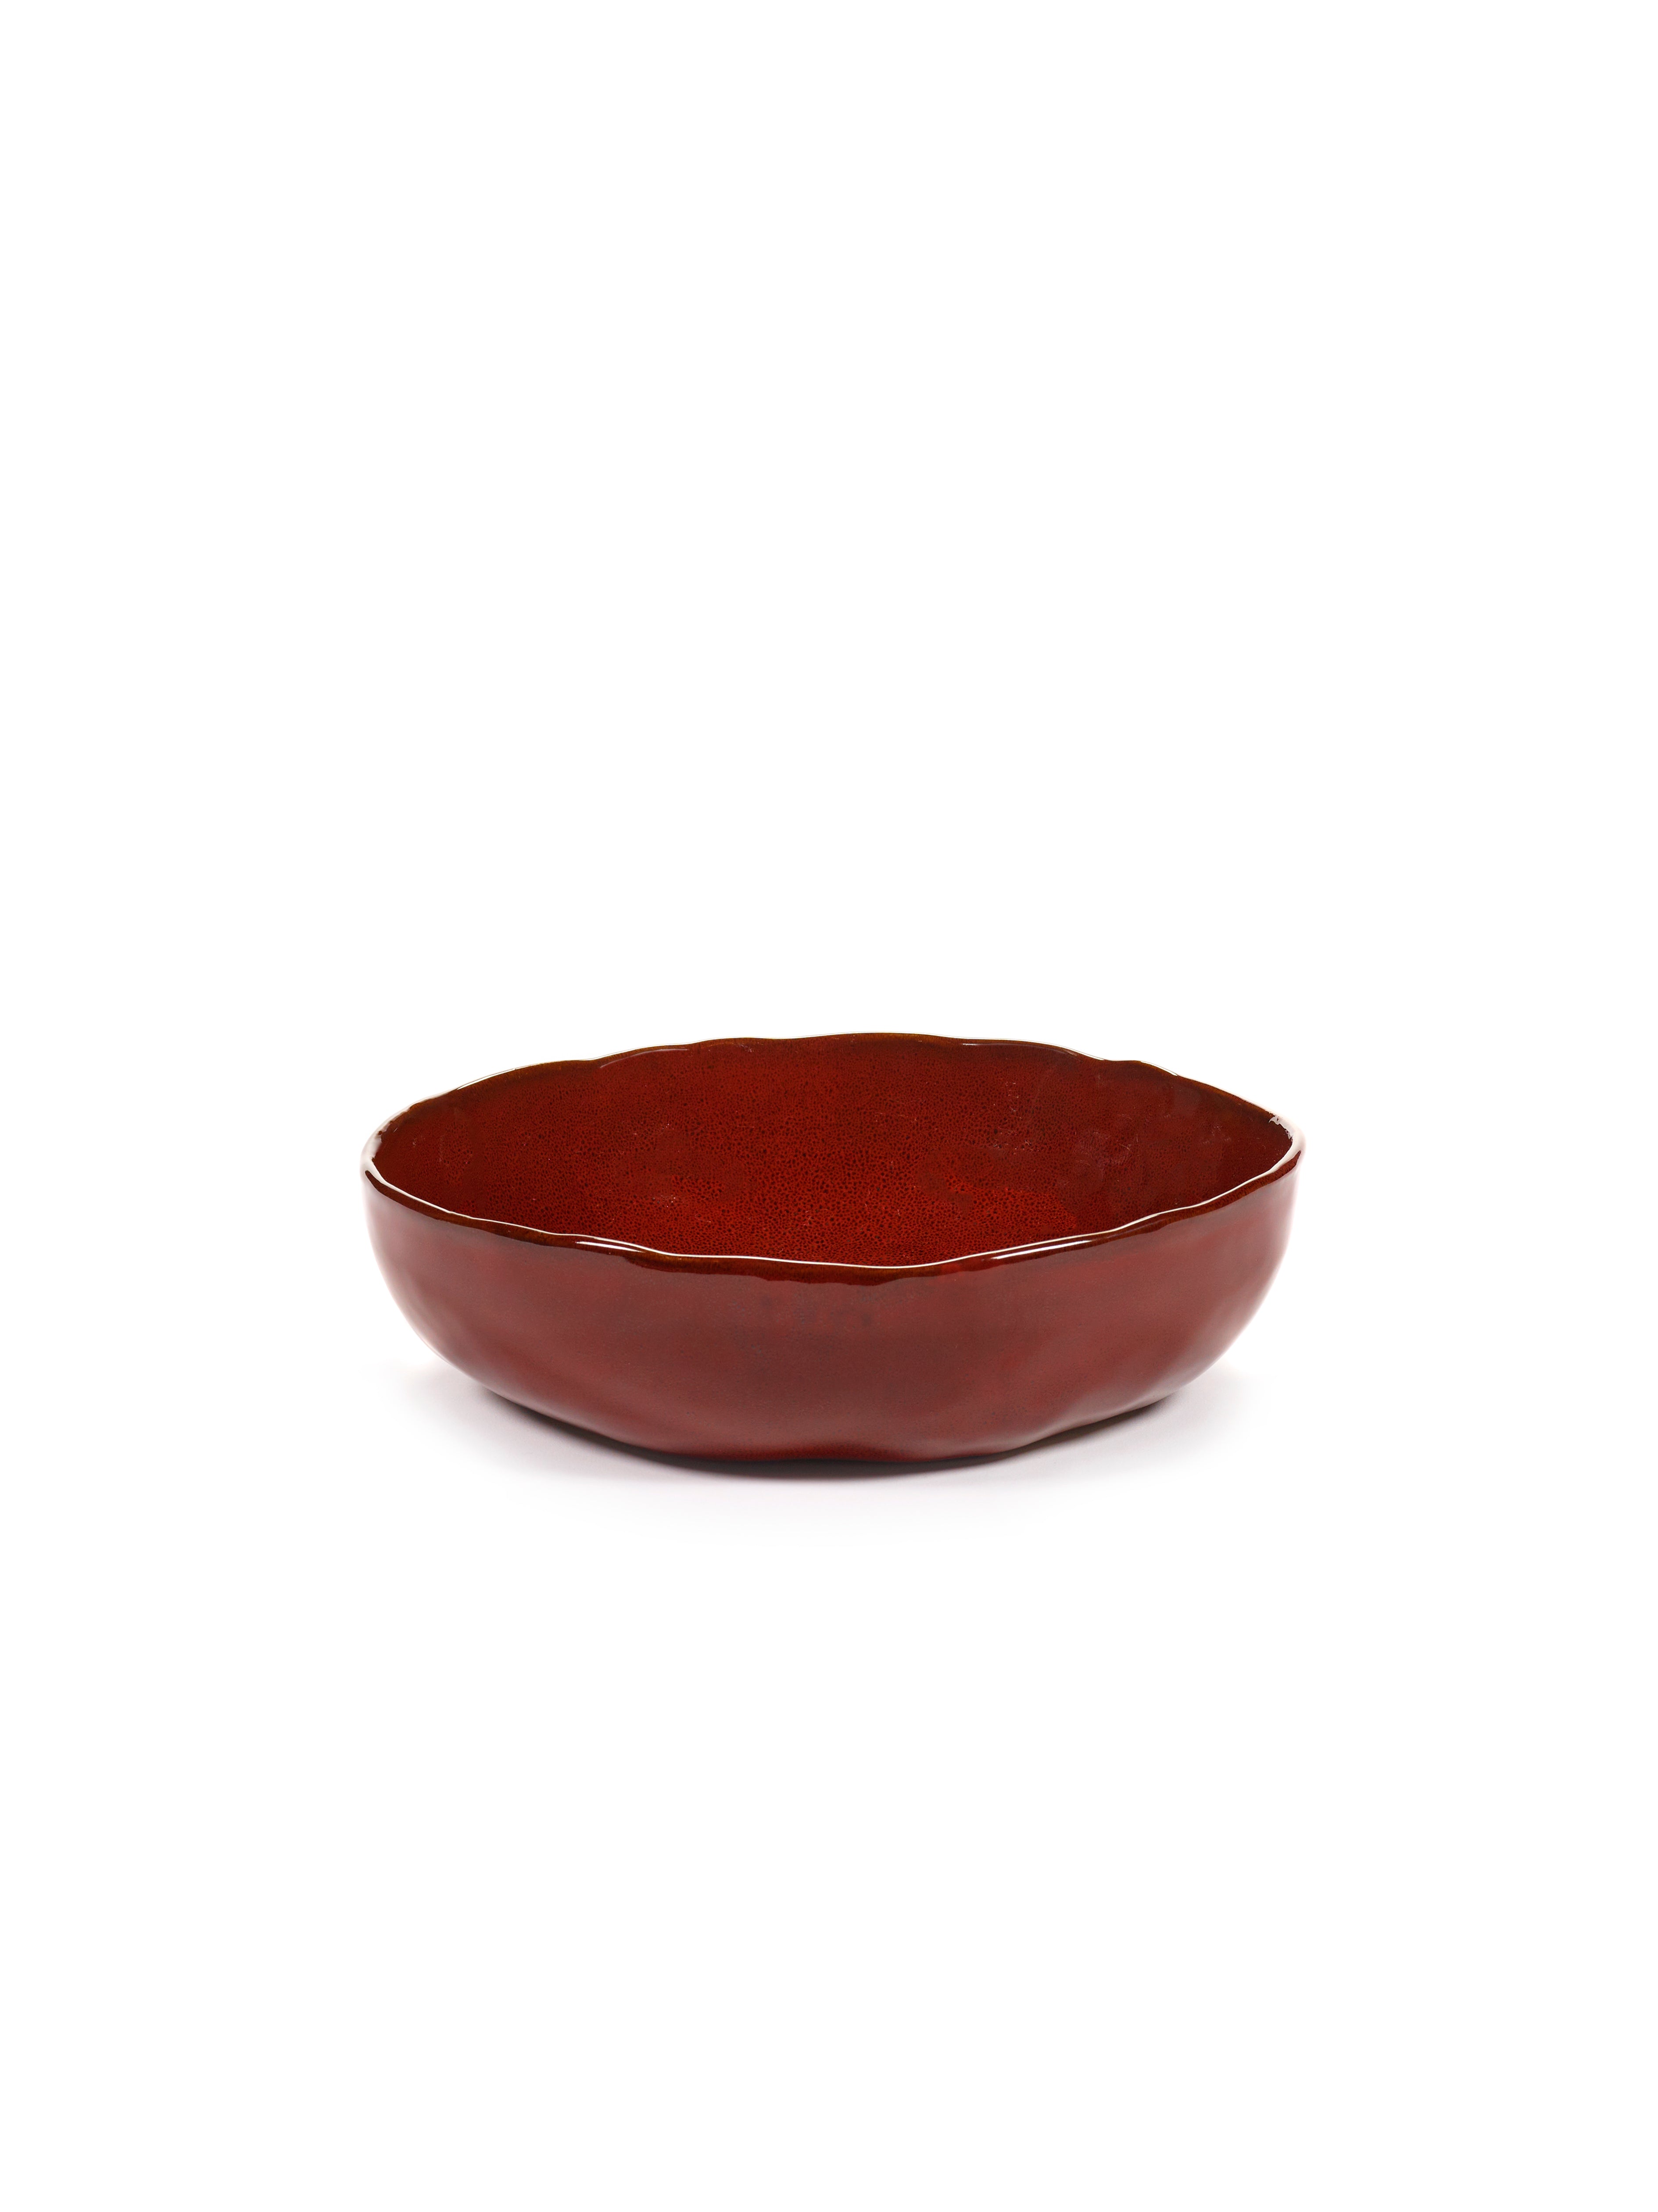 Bowl L - La Mère by Marie Michielssen - Venetian red